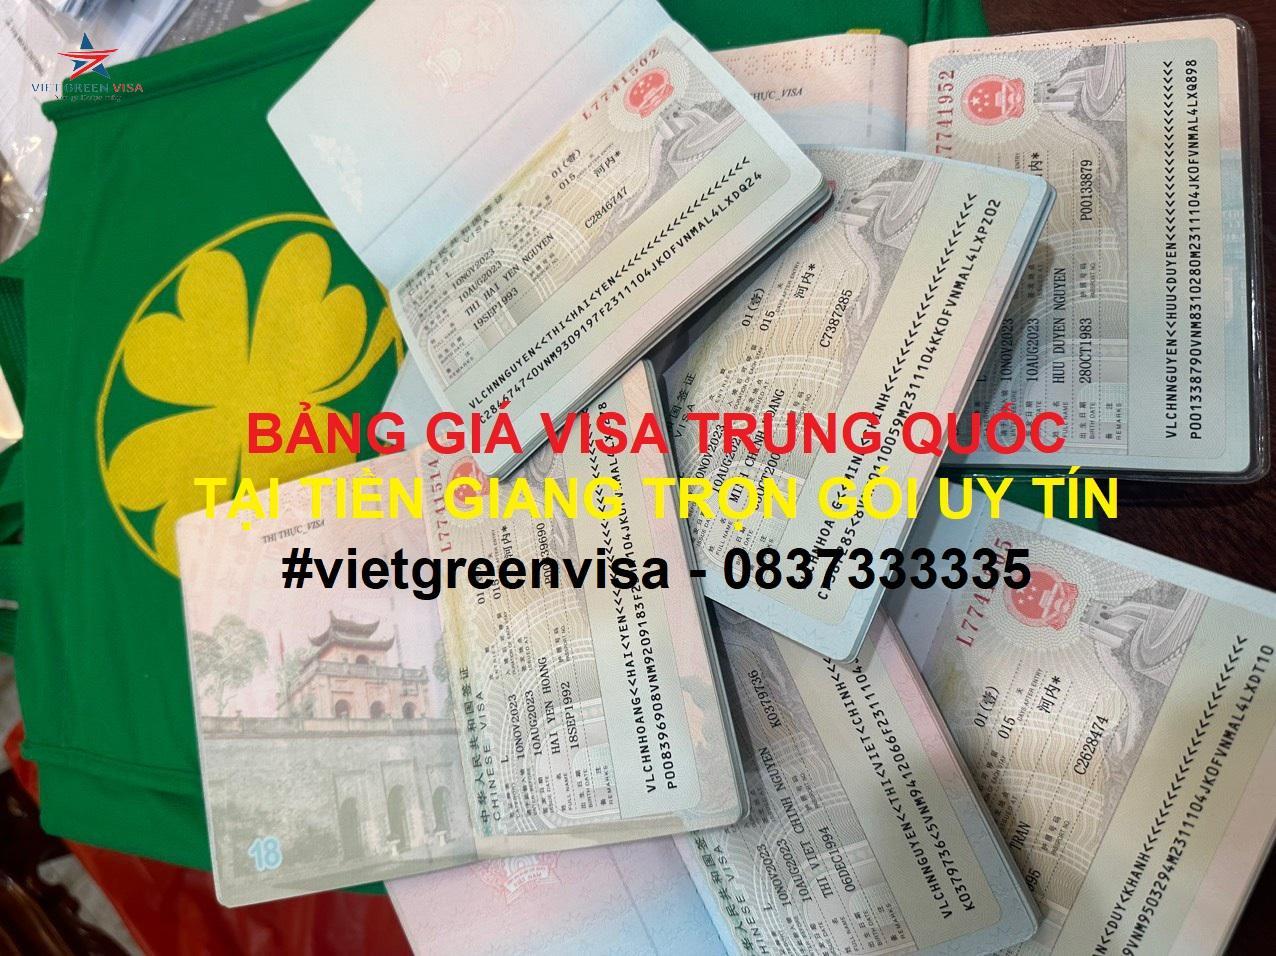 Dịch vụ xin visa Trung Quốc tại Tiền Giang trọn gói